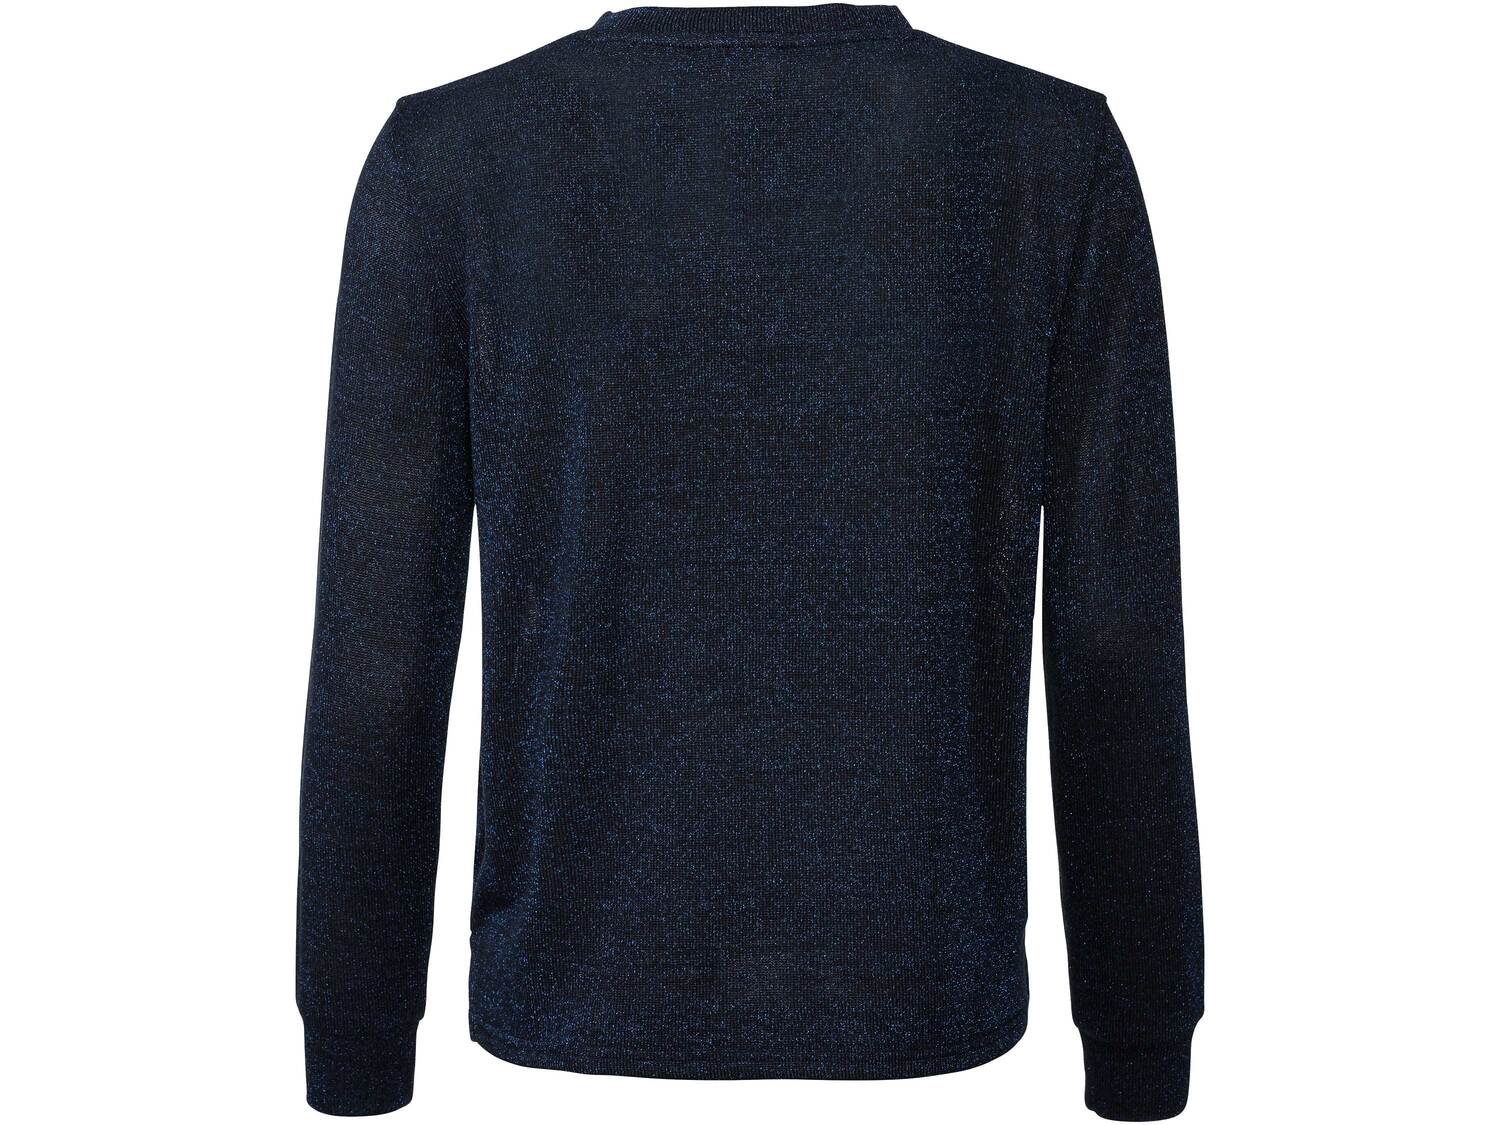 Sweter Esmara, cena 29,99 PLN 
- z błyszczącej dzianiny
- rozmiary: S-L
Dostępne ...